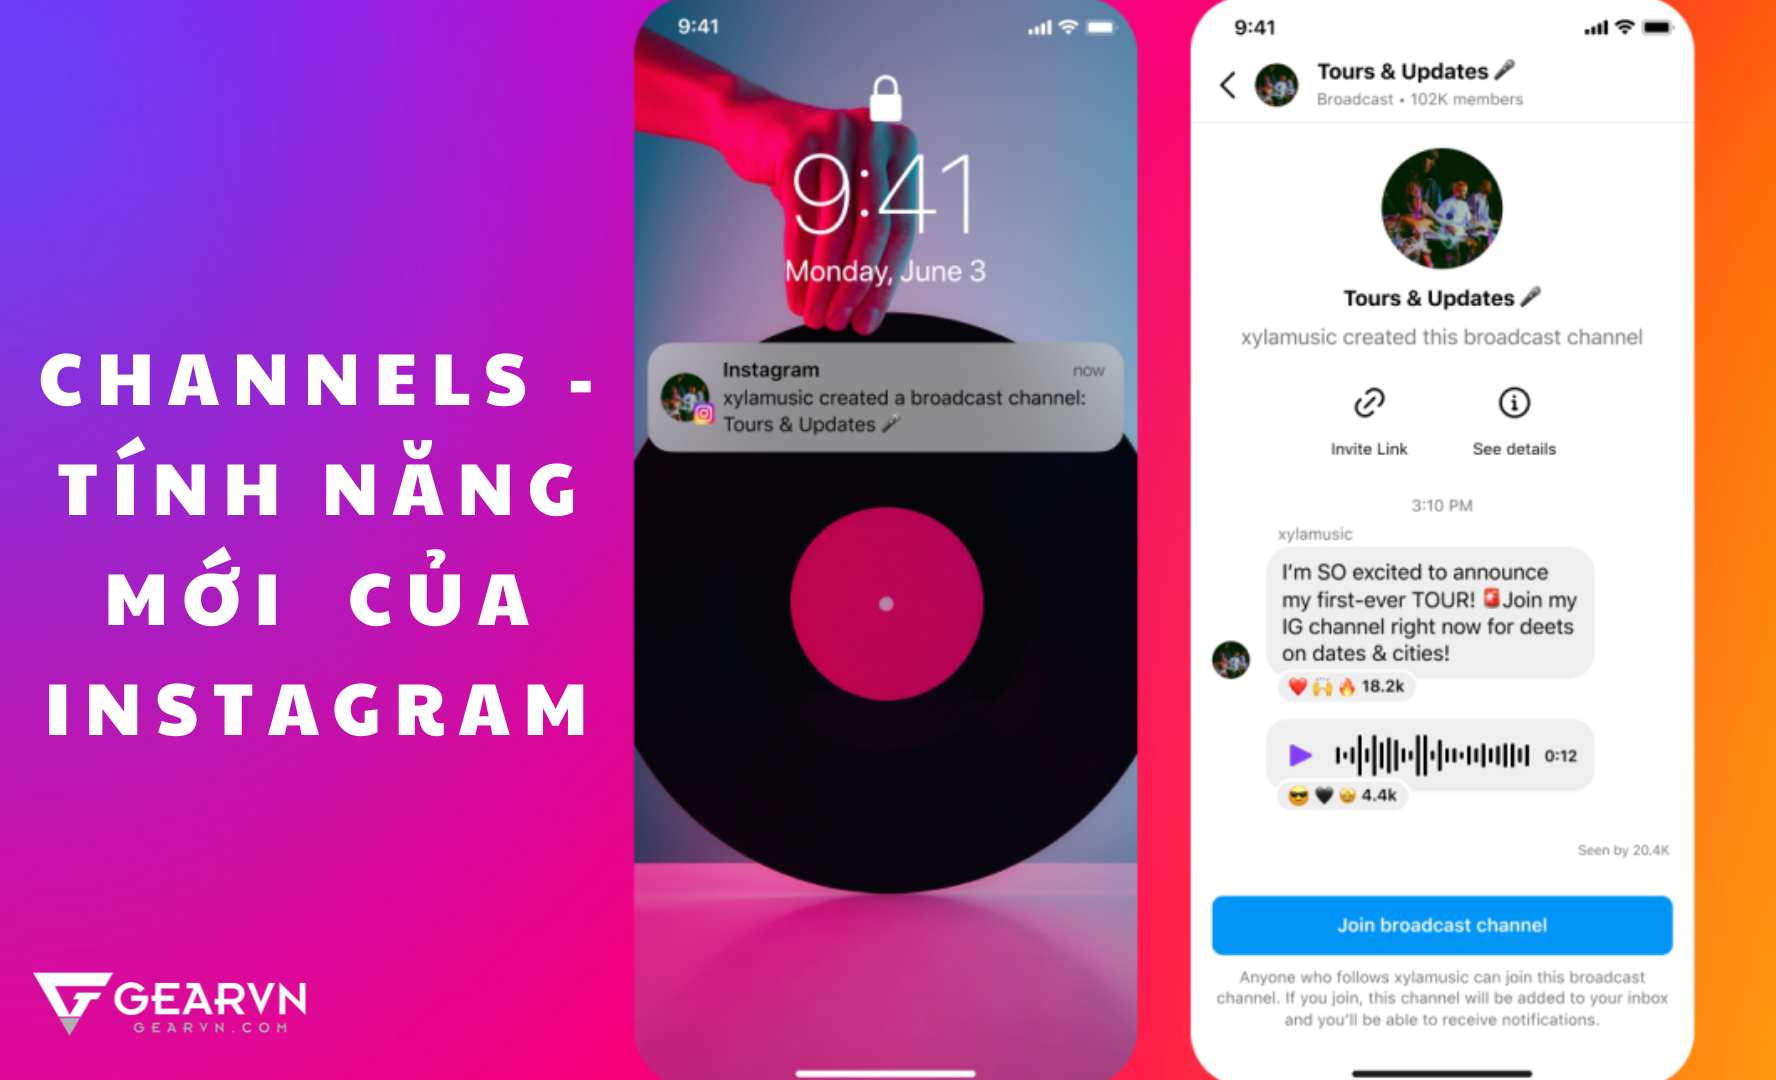 Channels - Tính năng Instagram mới cho Influencer và Creator